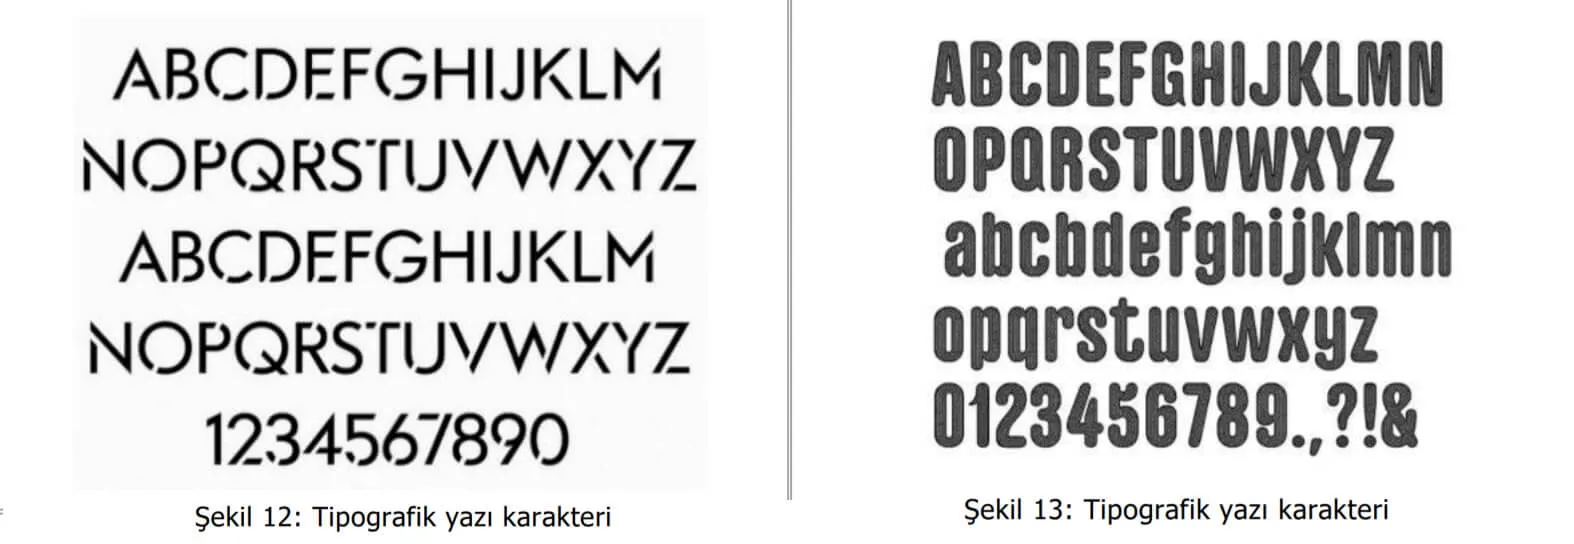 tipografik yazı karakter örnekleri-sincan patent